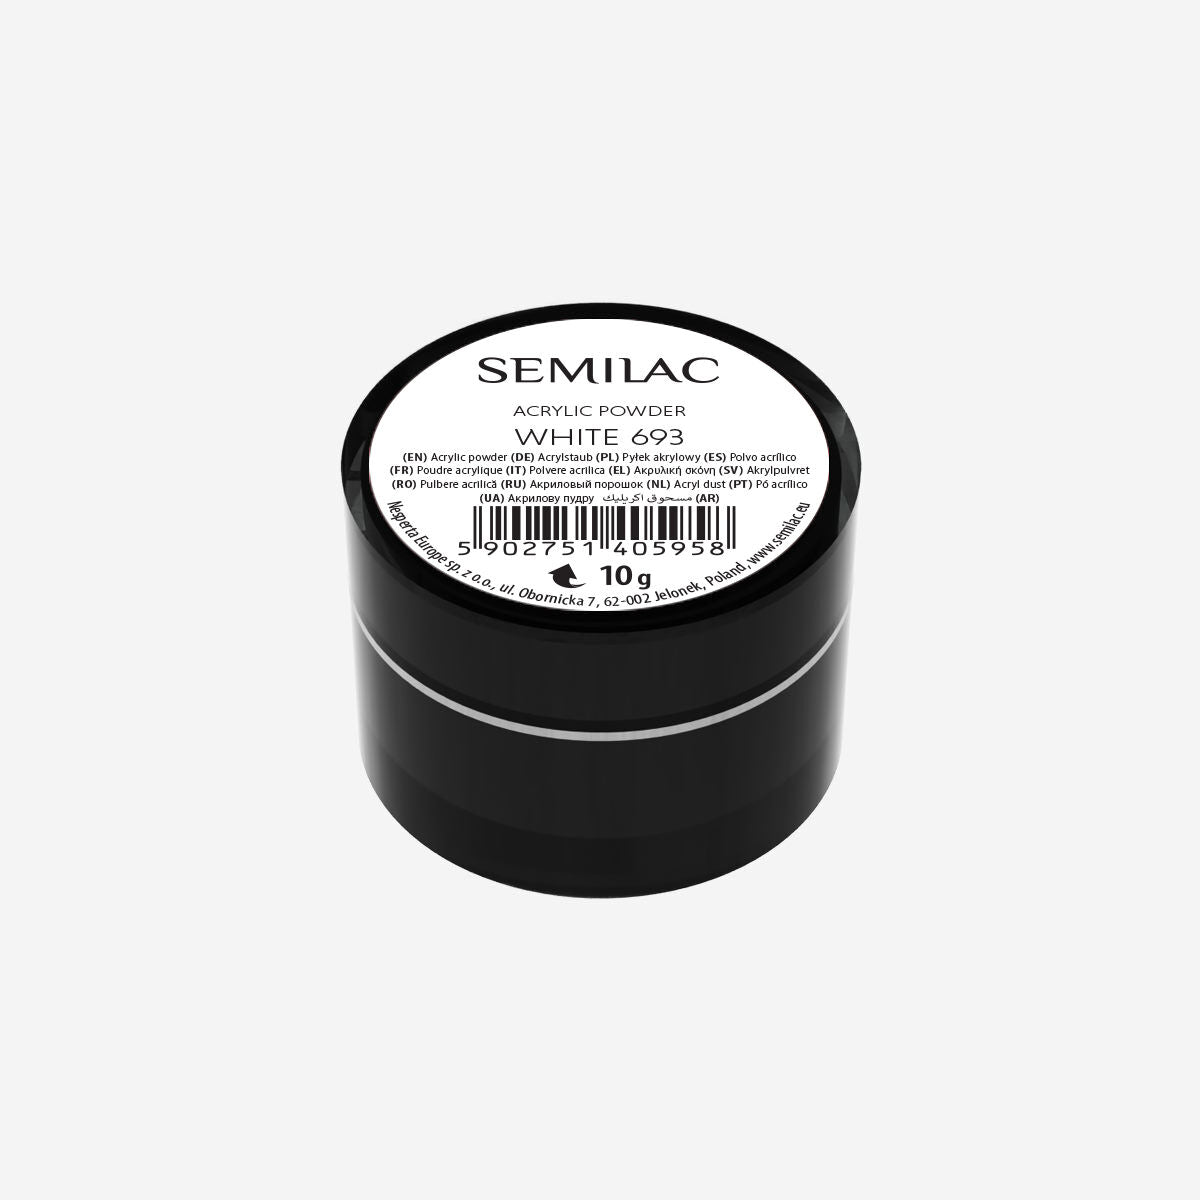 Semilac Acrylic Powder White 693 - Semilac UK